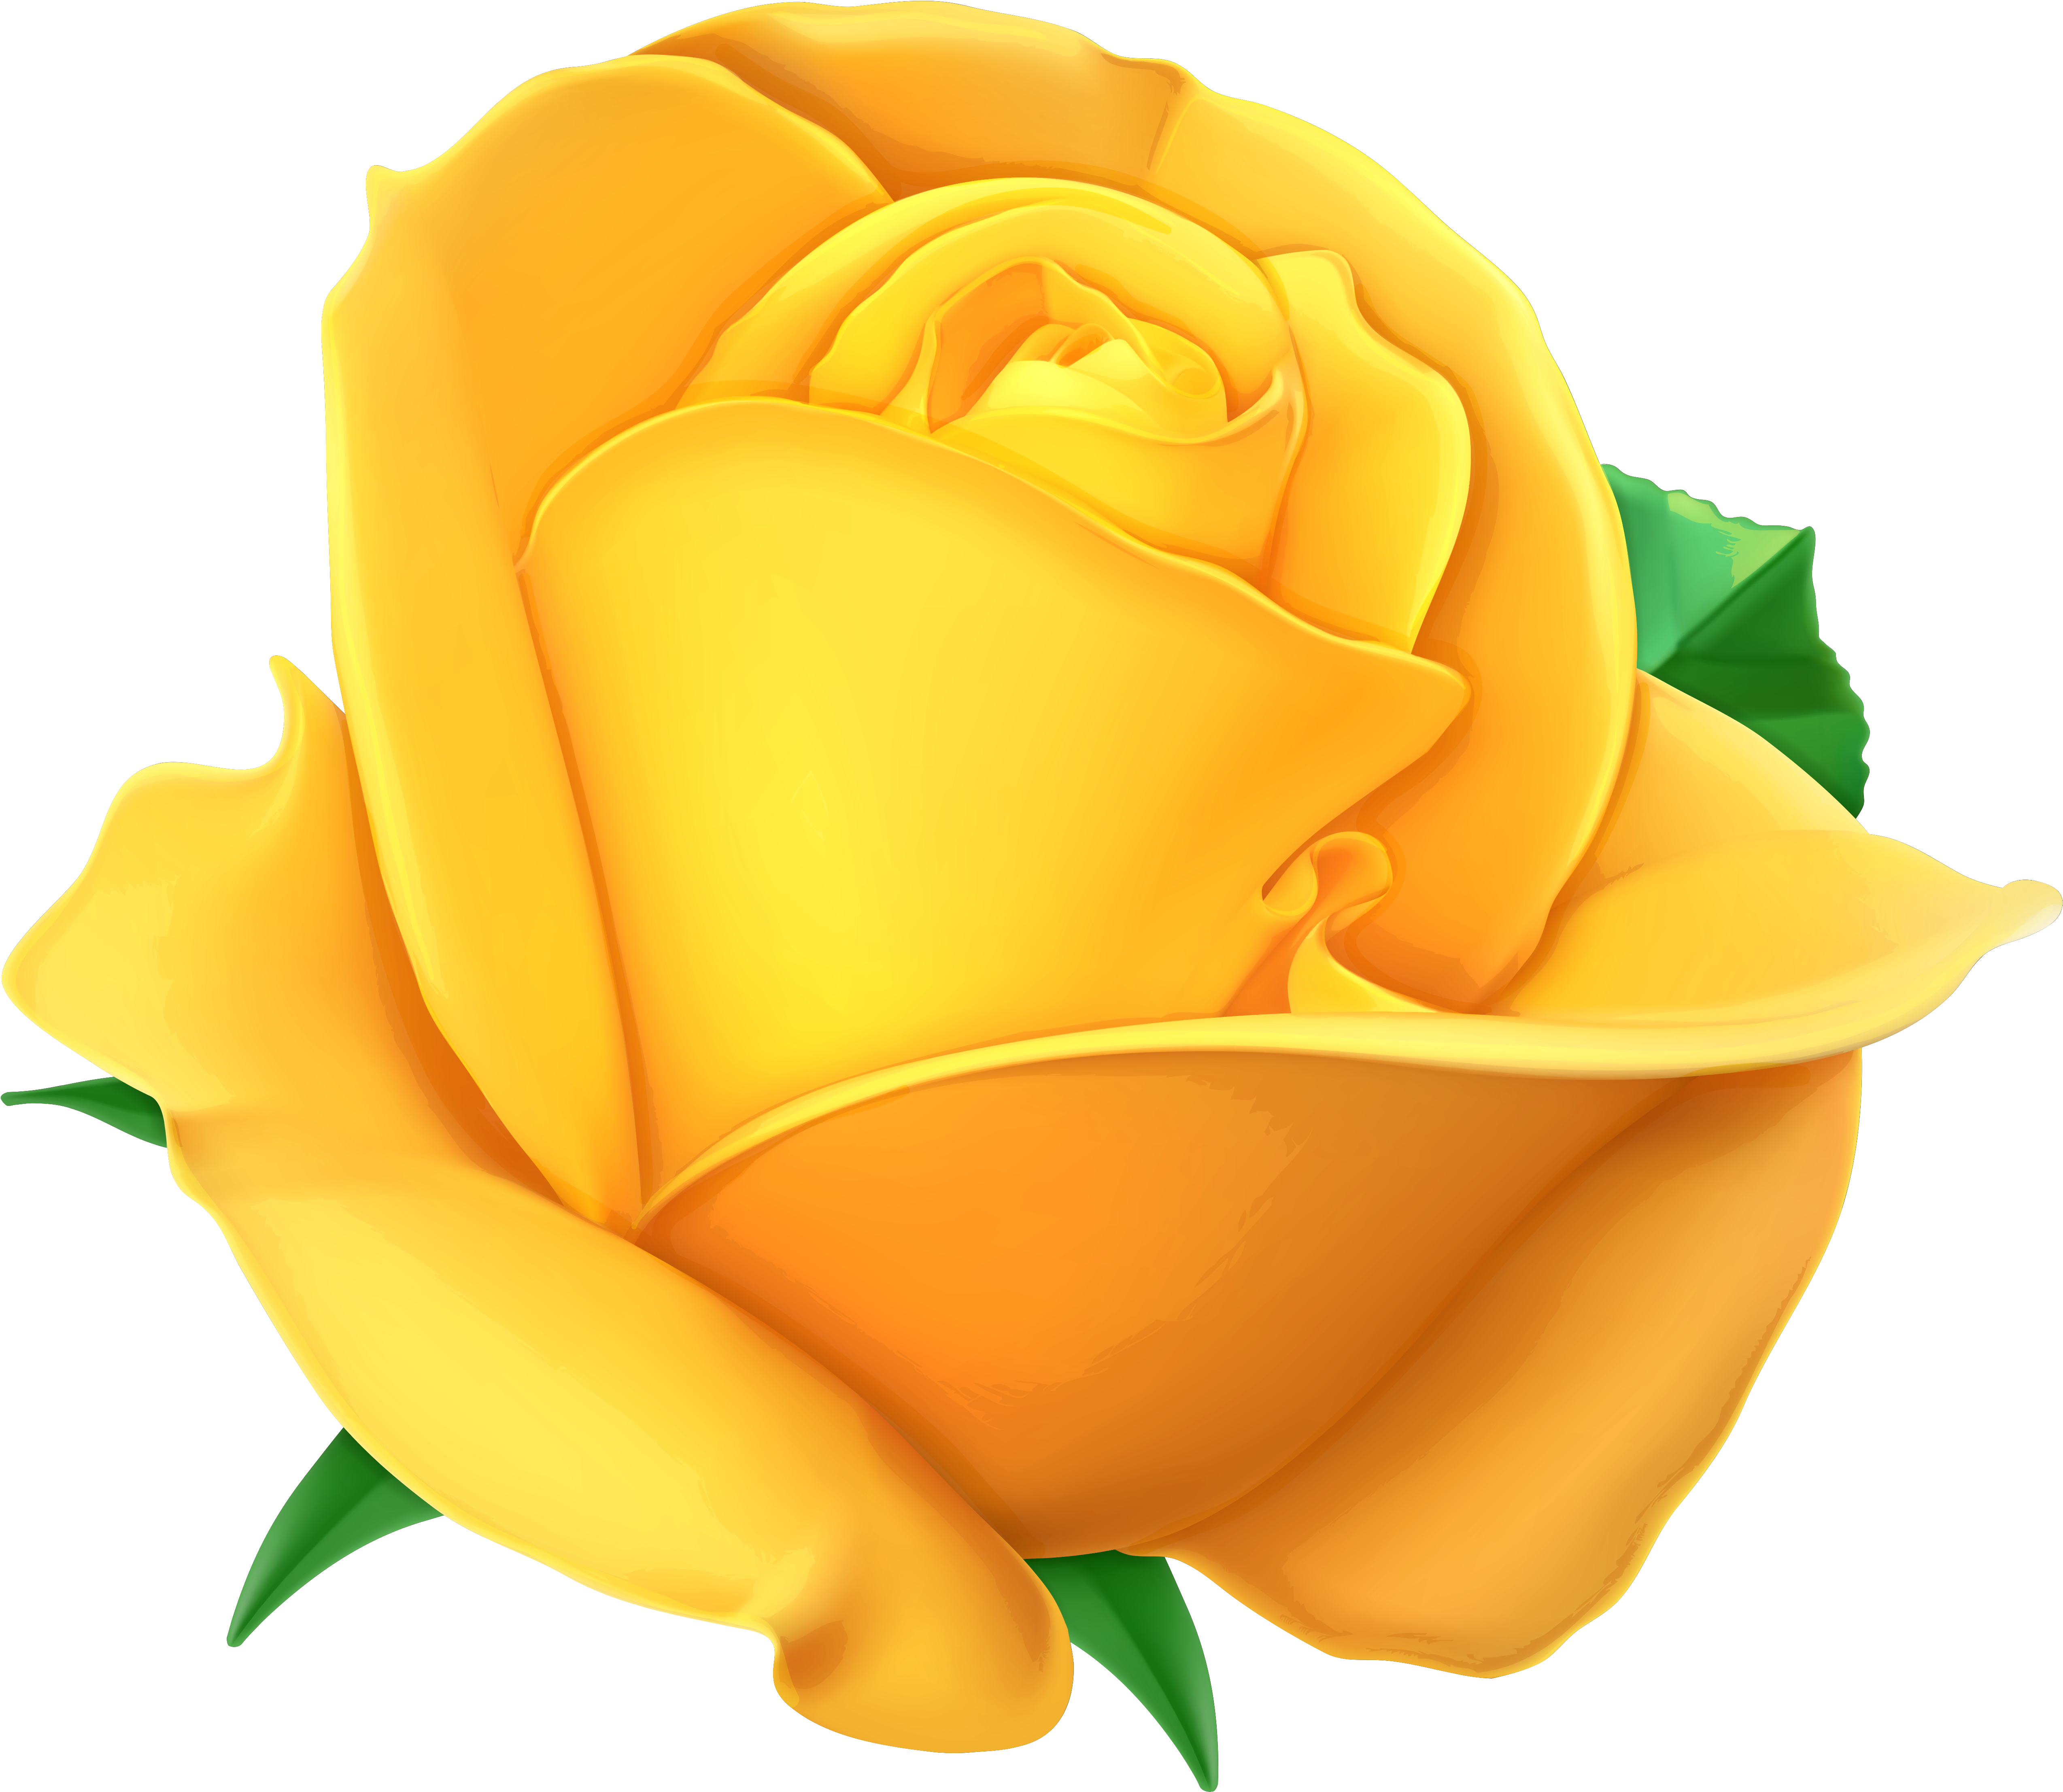 Gelbe Rosen, Clipart, Ausschneidebild, Rosen - Yellow Rose Transparent Background (5382x4694)